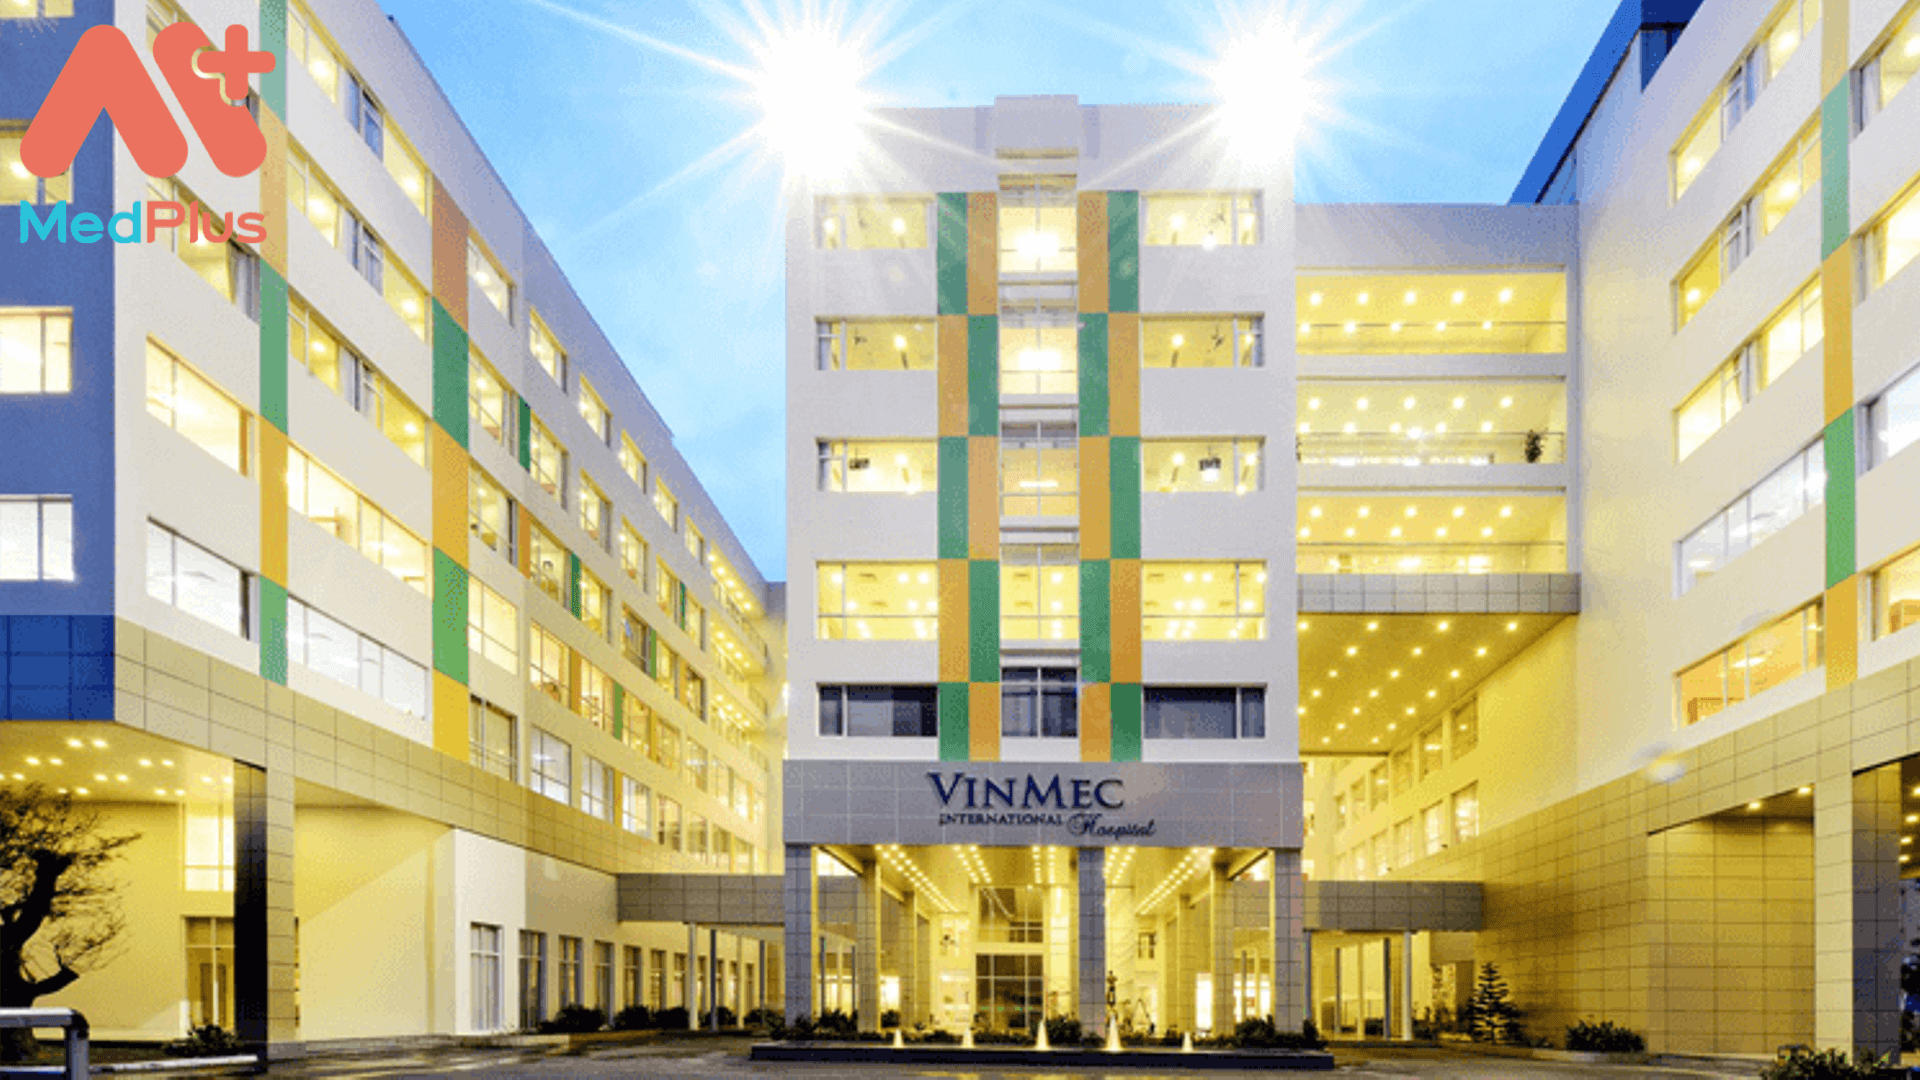 Giới thiệu hệ thống bệnh viện Vinmec